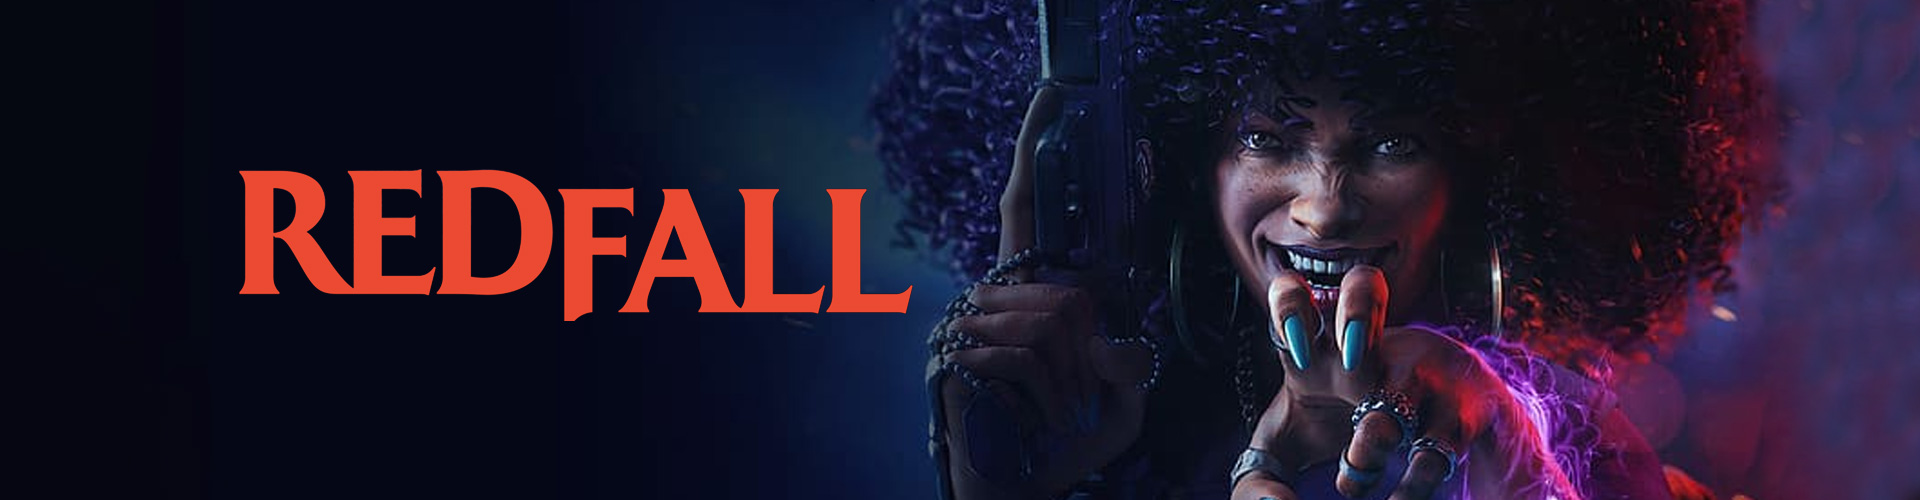 Redfall: Ein Multiplayer-Horrorspiel im Ego-Shooter-Stil.